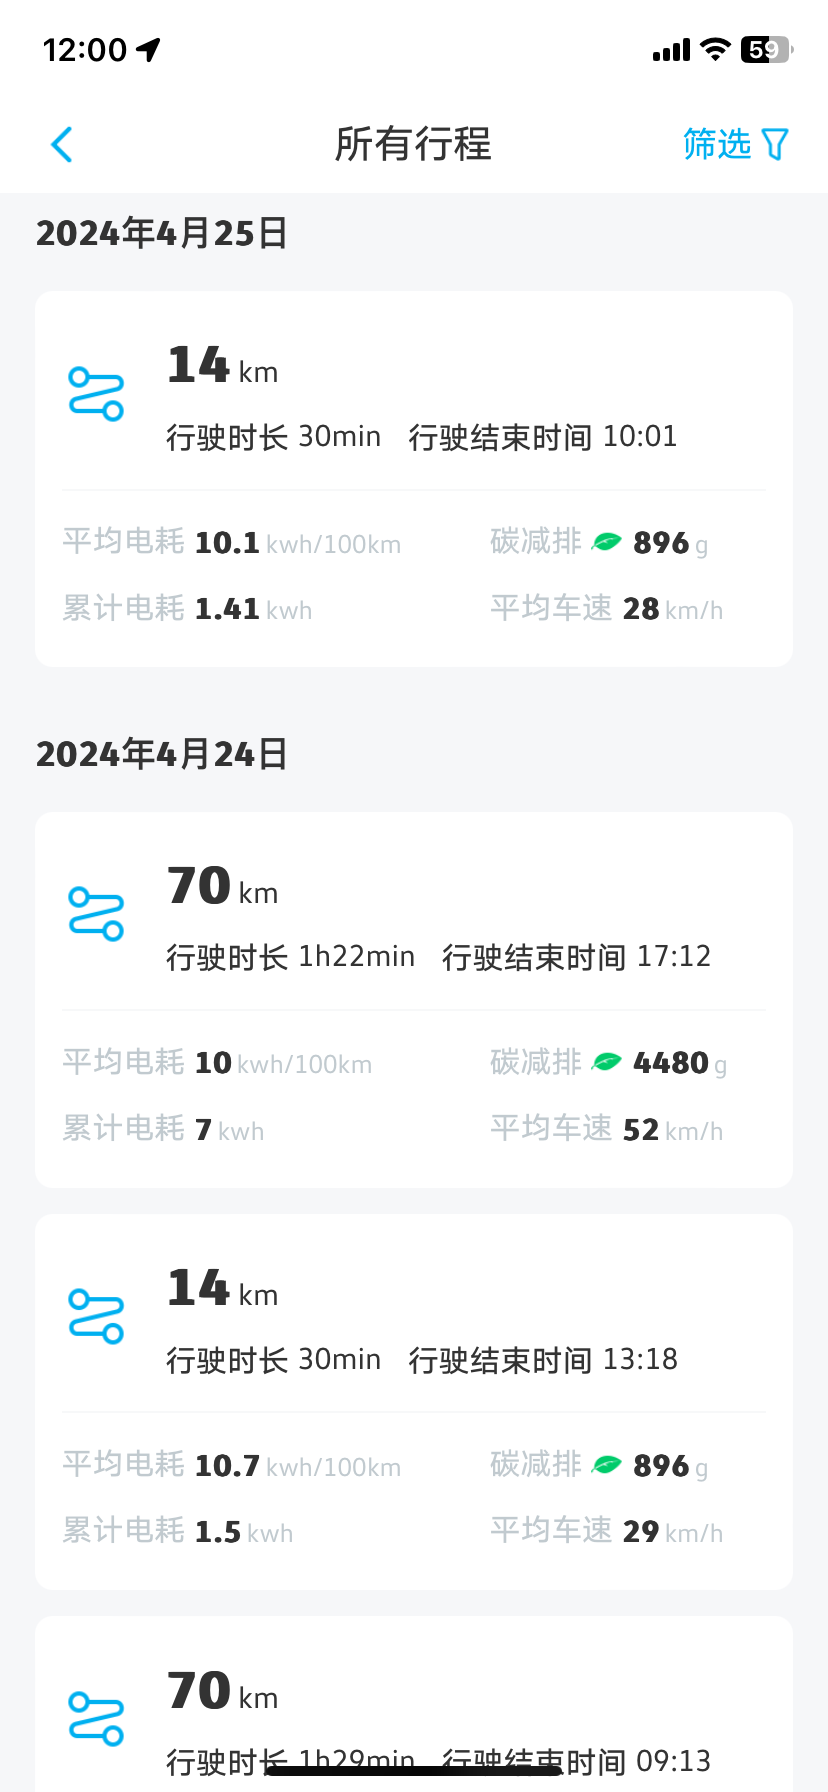 -城市：上海
-温度：11-23度
-车型型号：ID3
-能耗表现：10.1kWh
-其他备注：高架+地面14公里 平均时速28 经济模式 空调lo度 